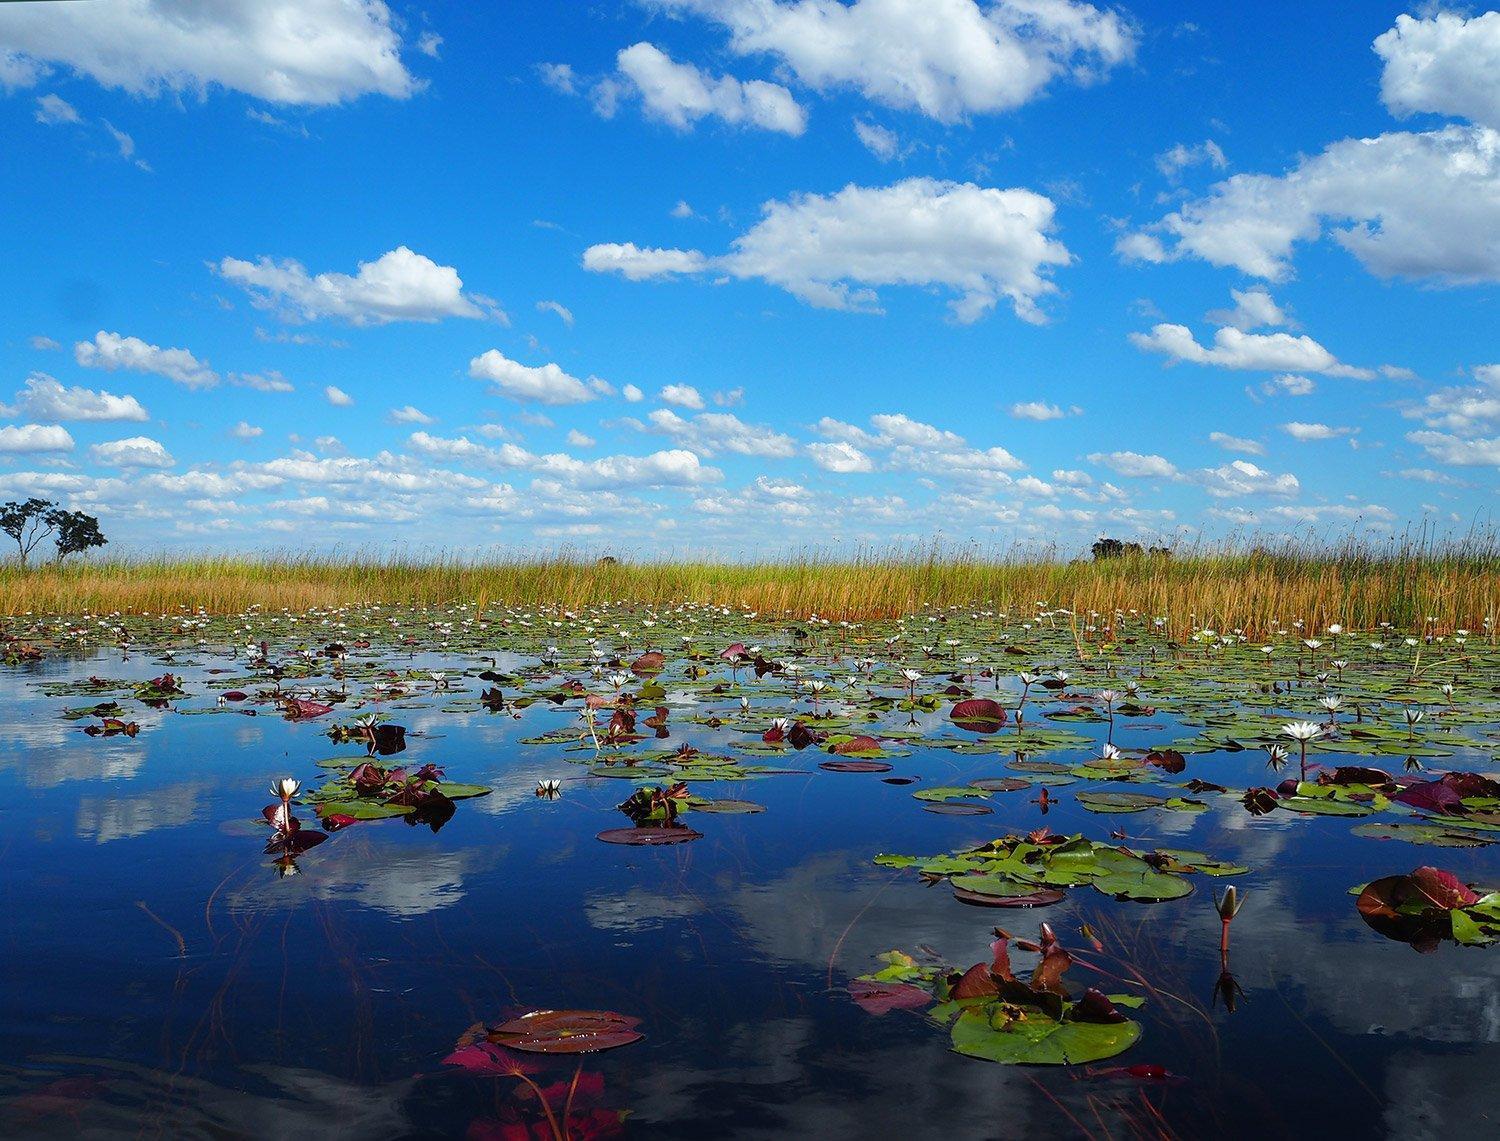 Sky reflected in the water, Okavango Delta